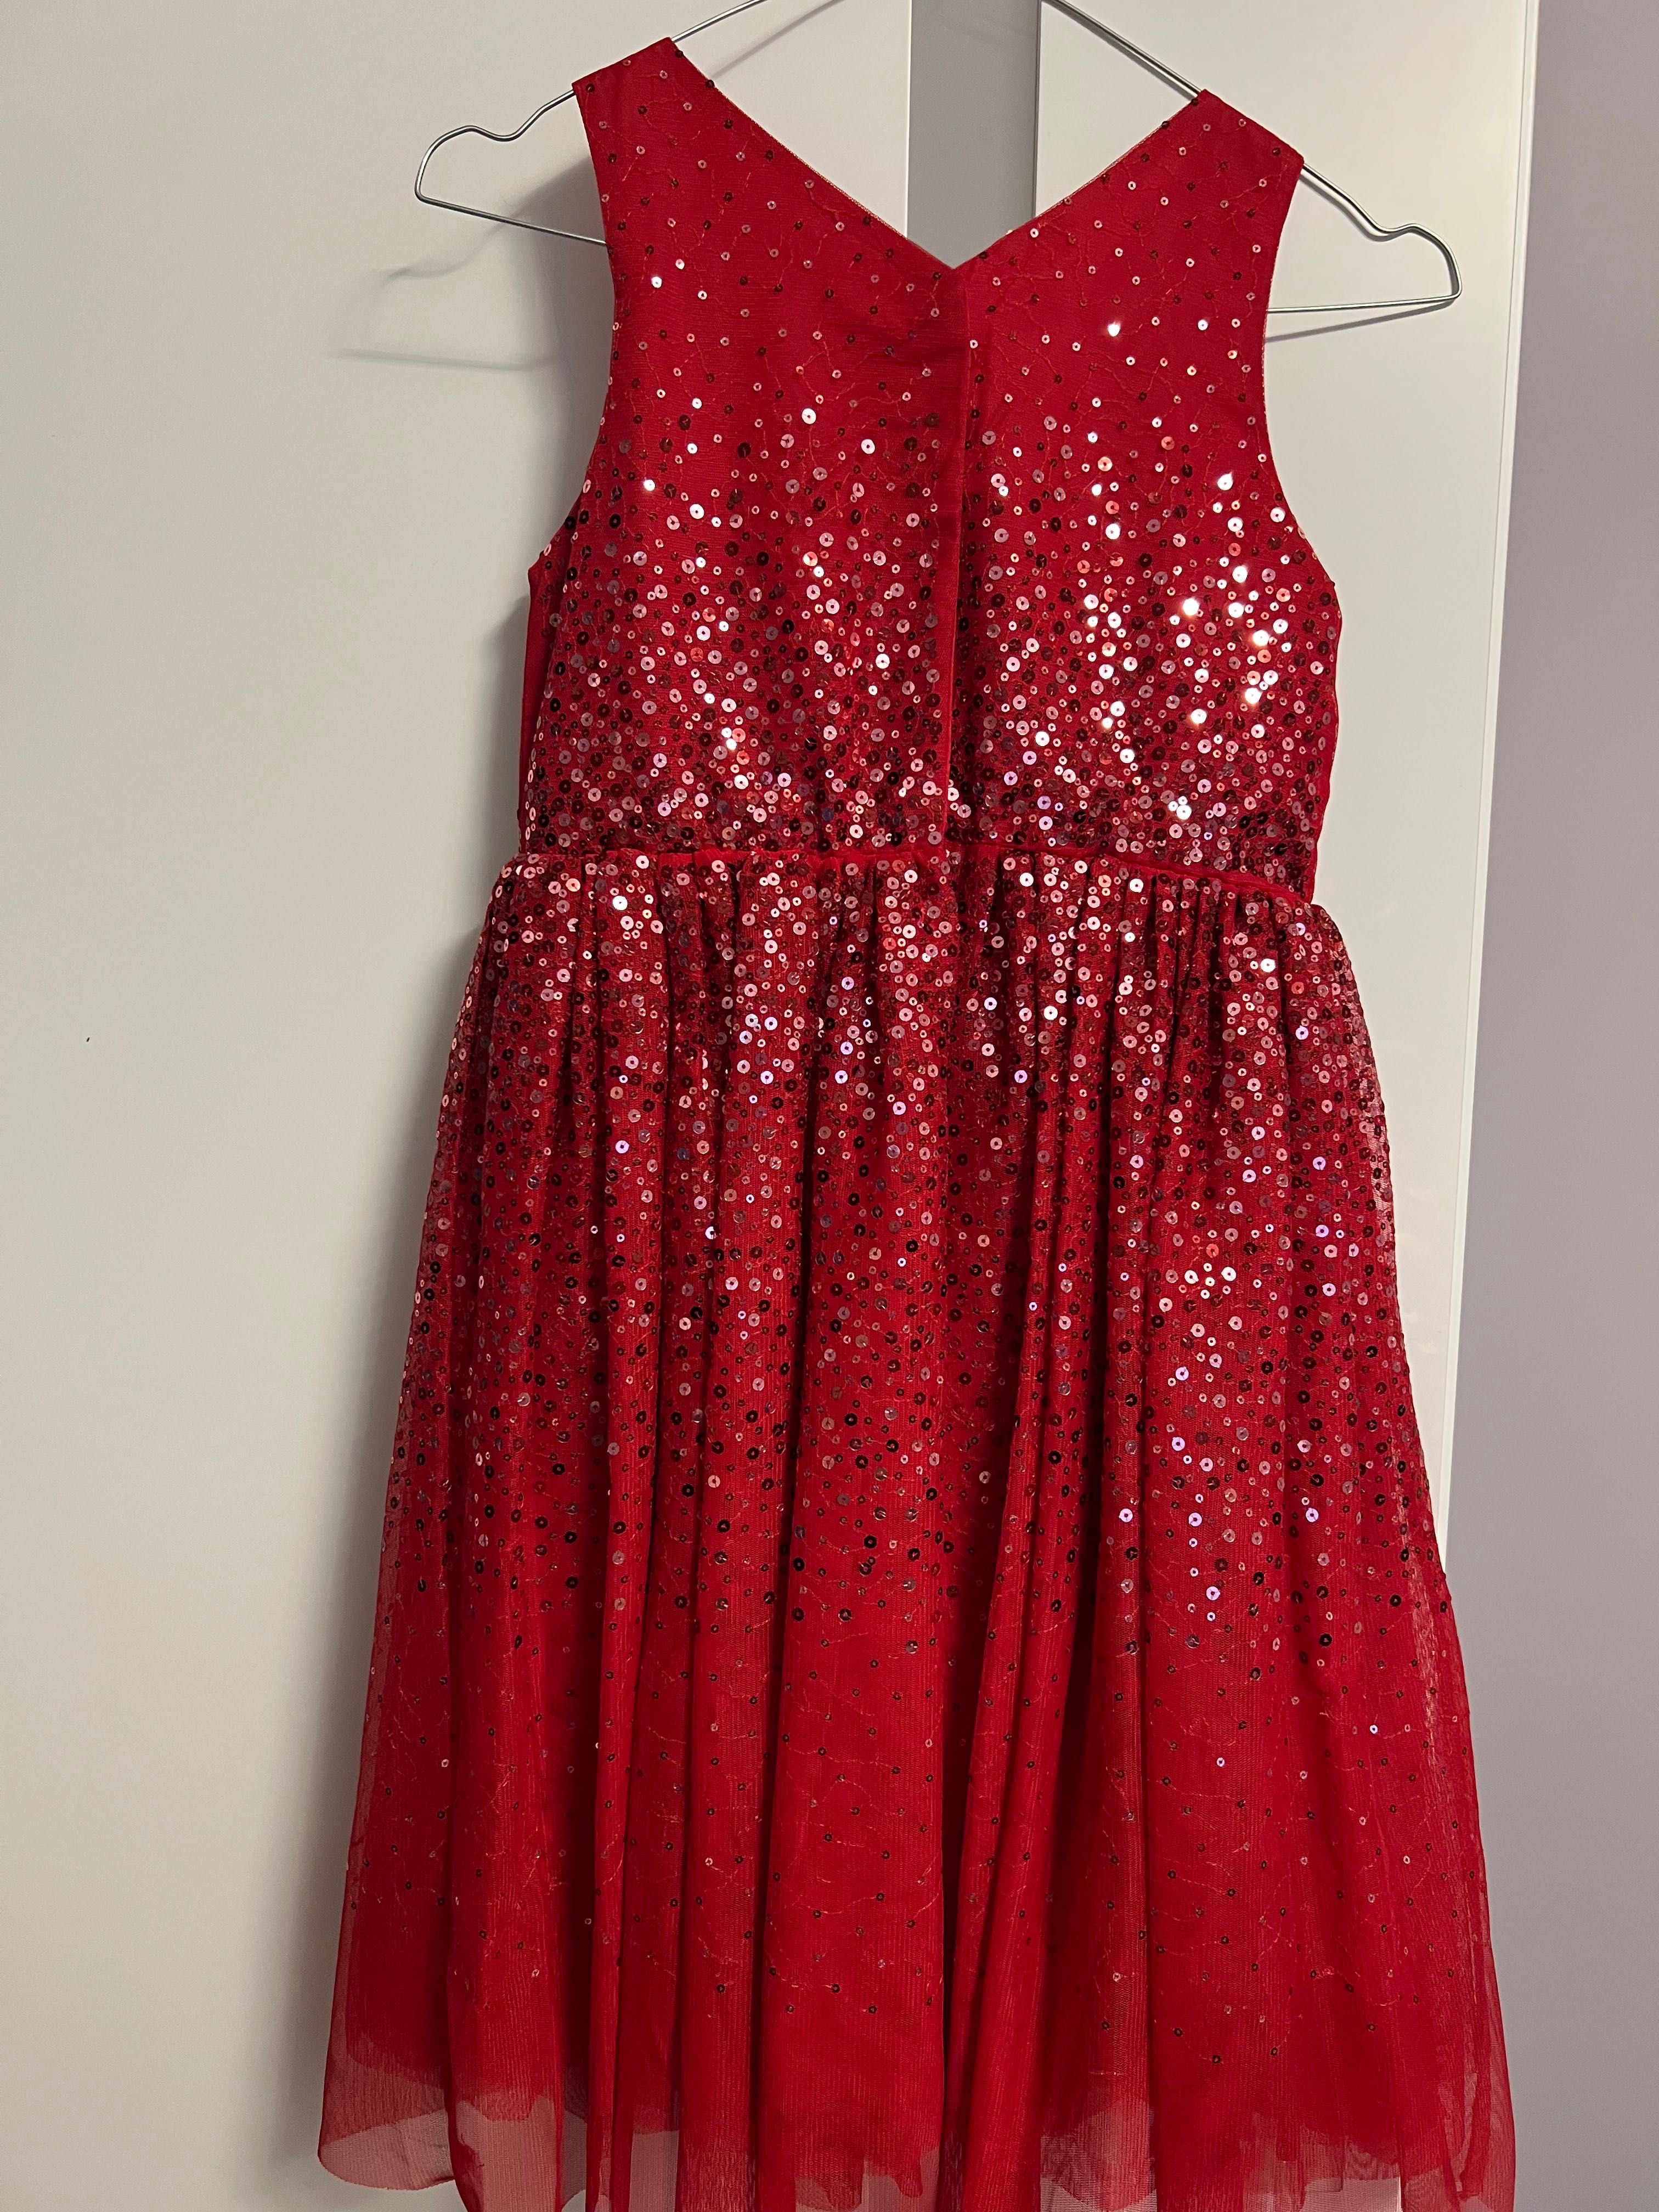 Официална червена рокля за малки дами. Супер промо цена само 29. 00лв.